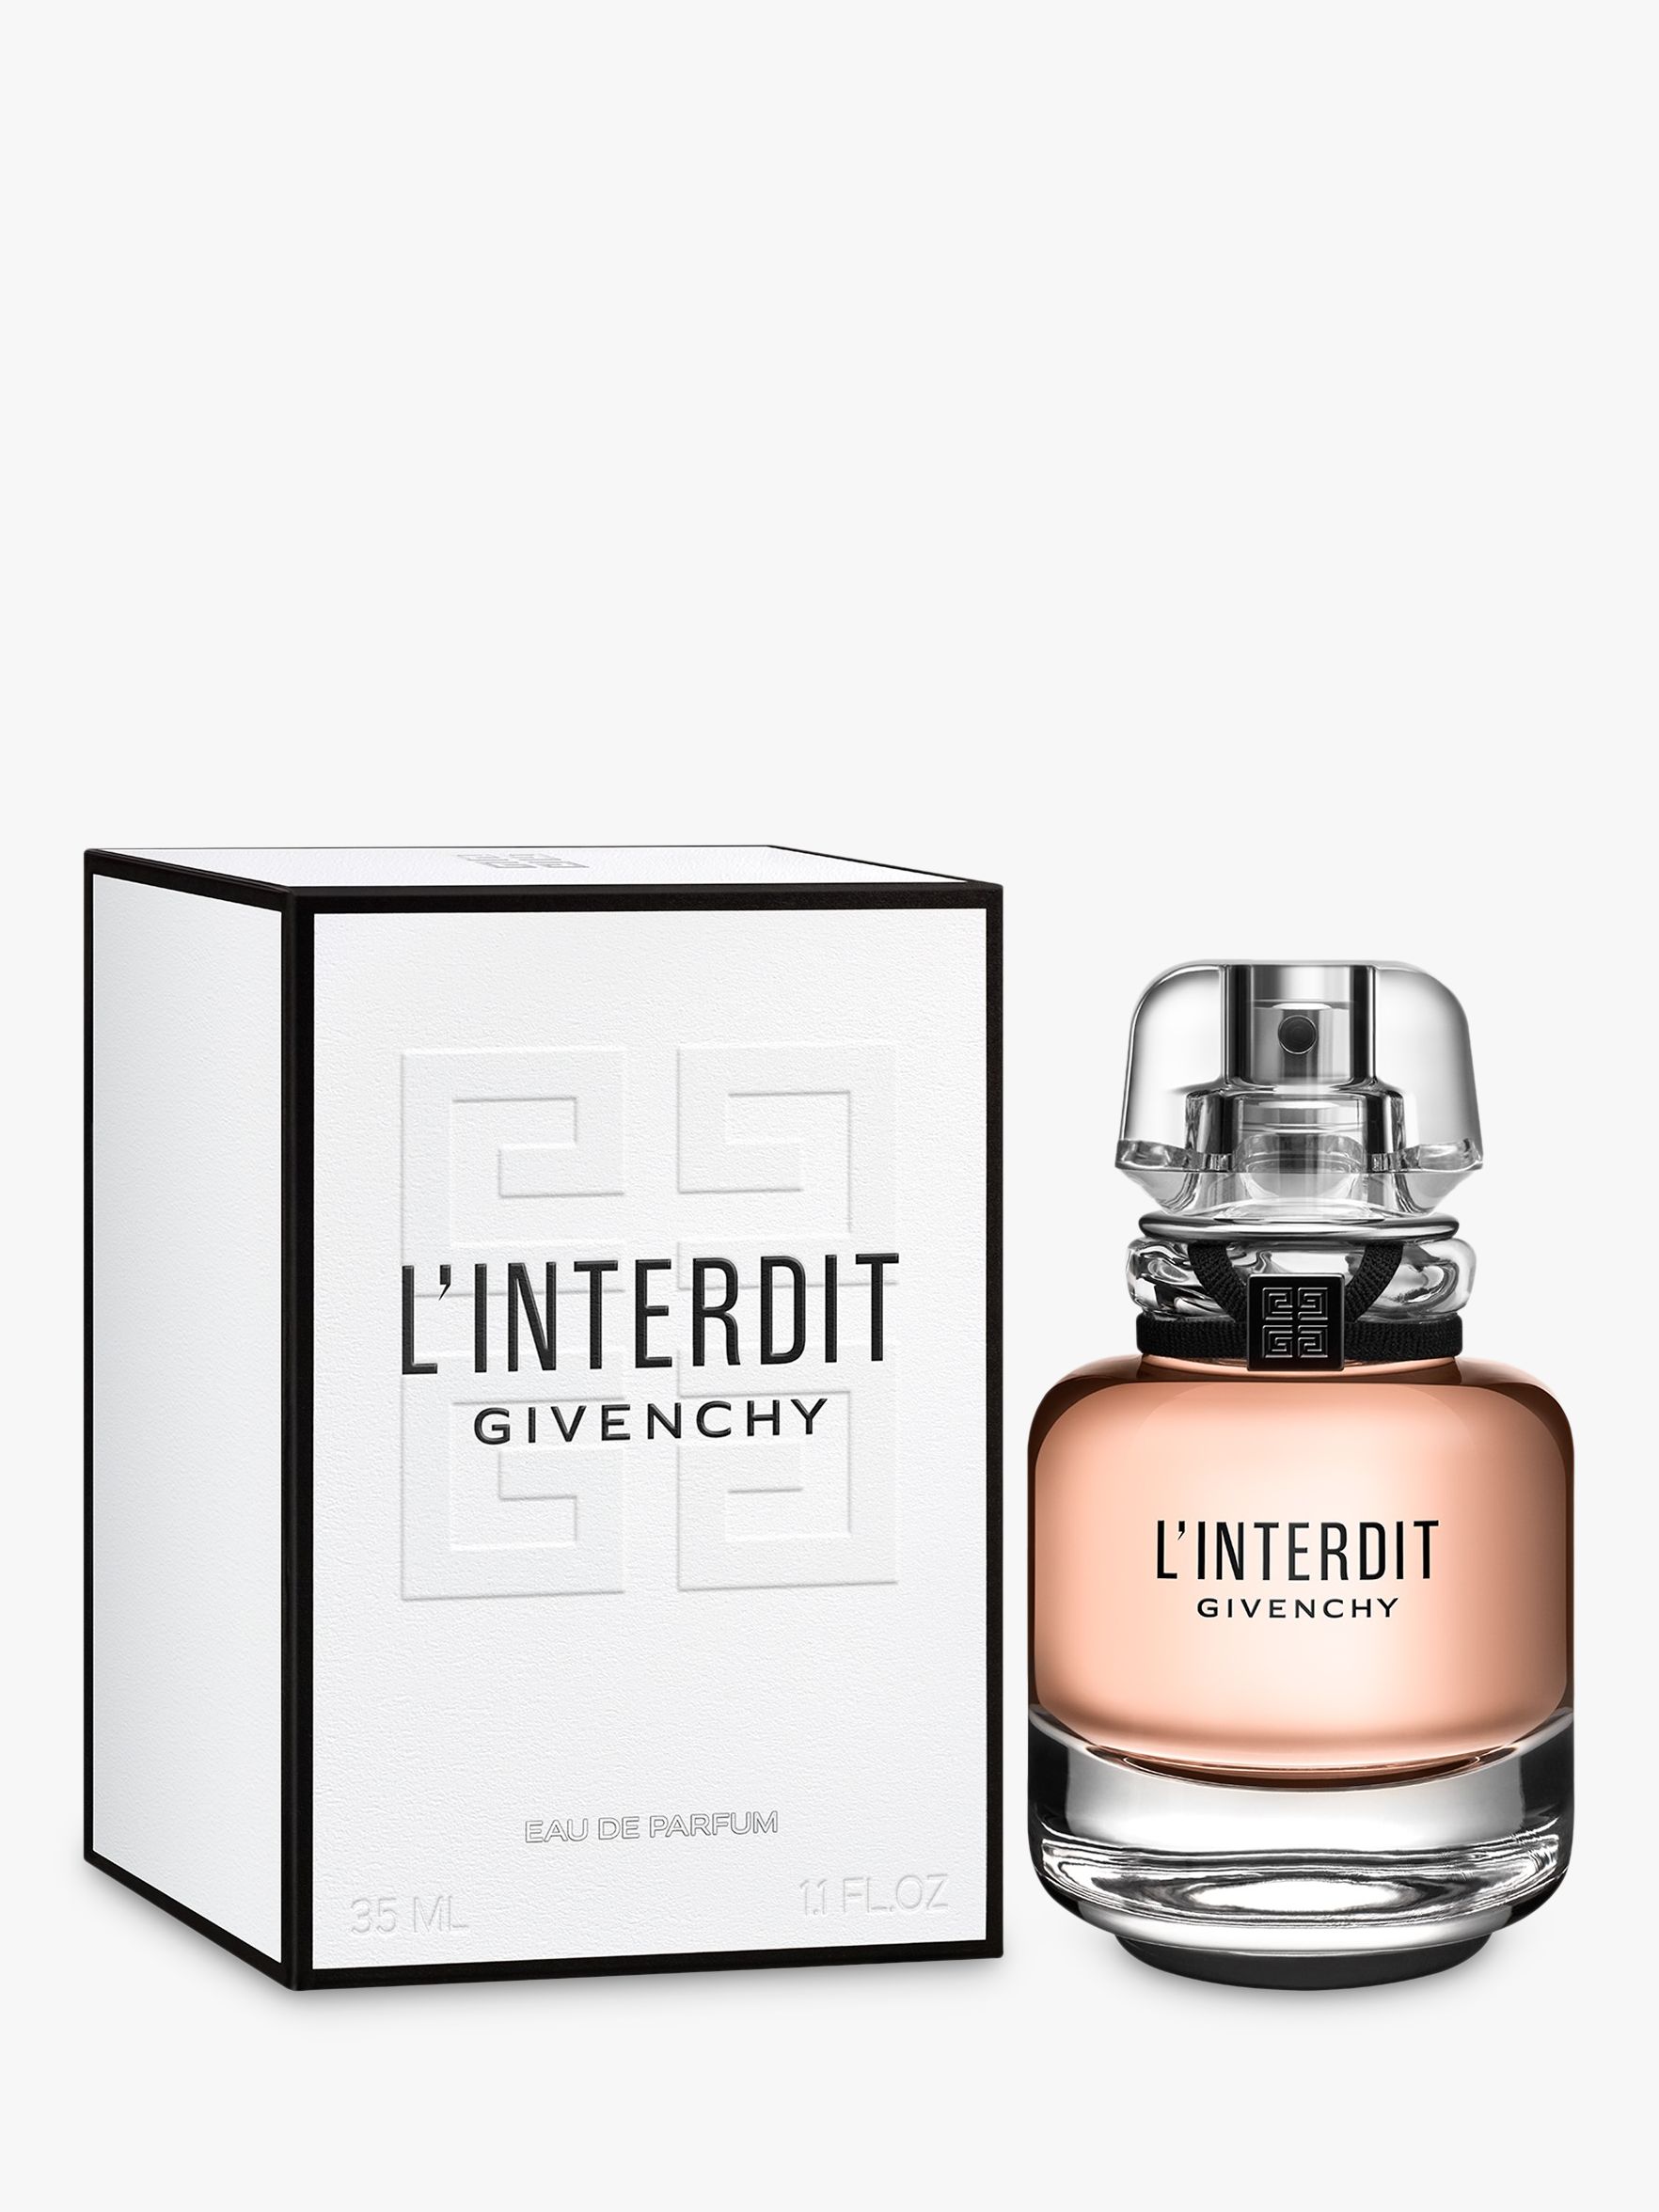 Givenchy L'Interdit Eau de Parfum at 